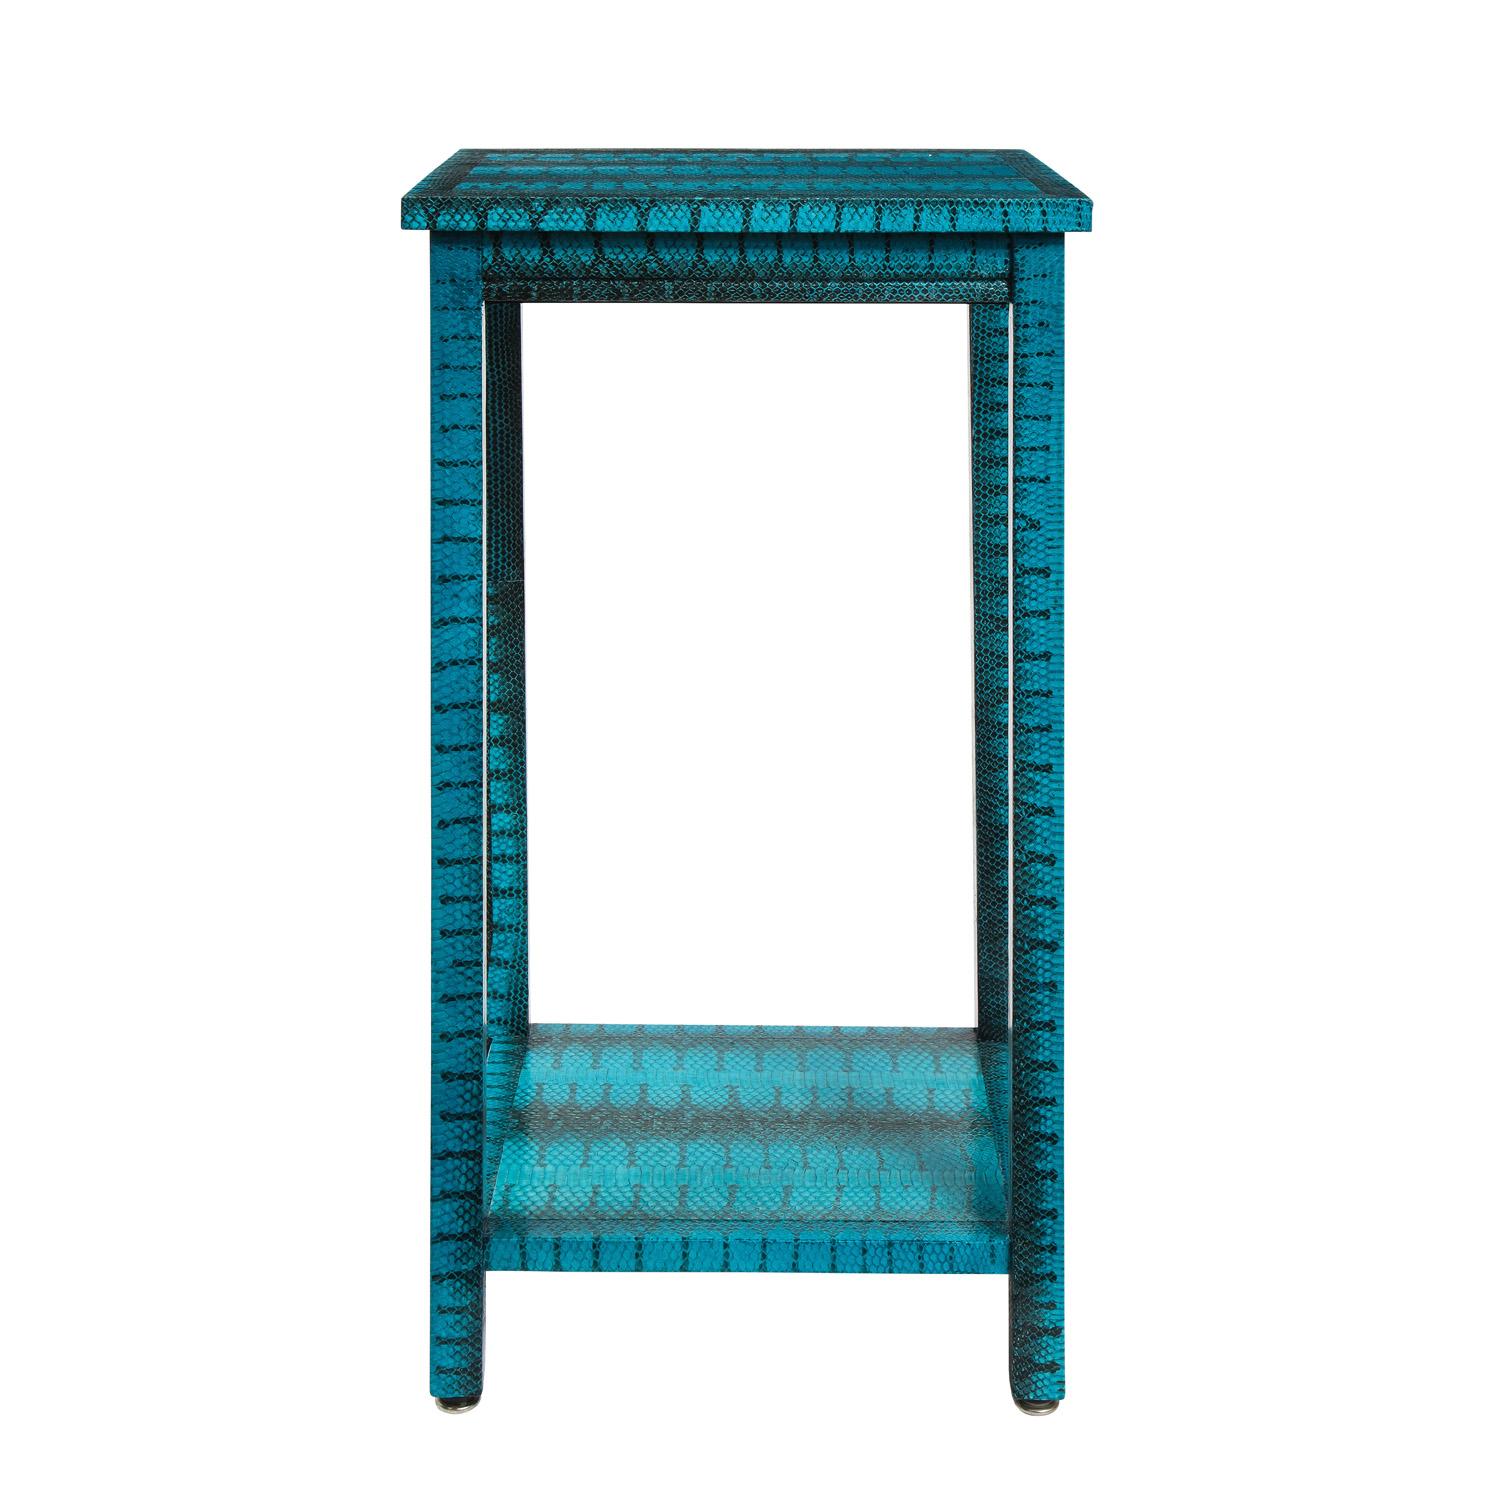 Grande table d'appoint à deux niveaux recouverte de peau de serpent bleue exotique par Evan Lobel pour Lobel Originals, American 2021. La couleur est exquise et c'est la table méticuleusement travaillée parfaite dans n'importe quelle pièce.